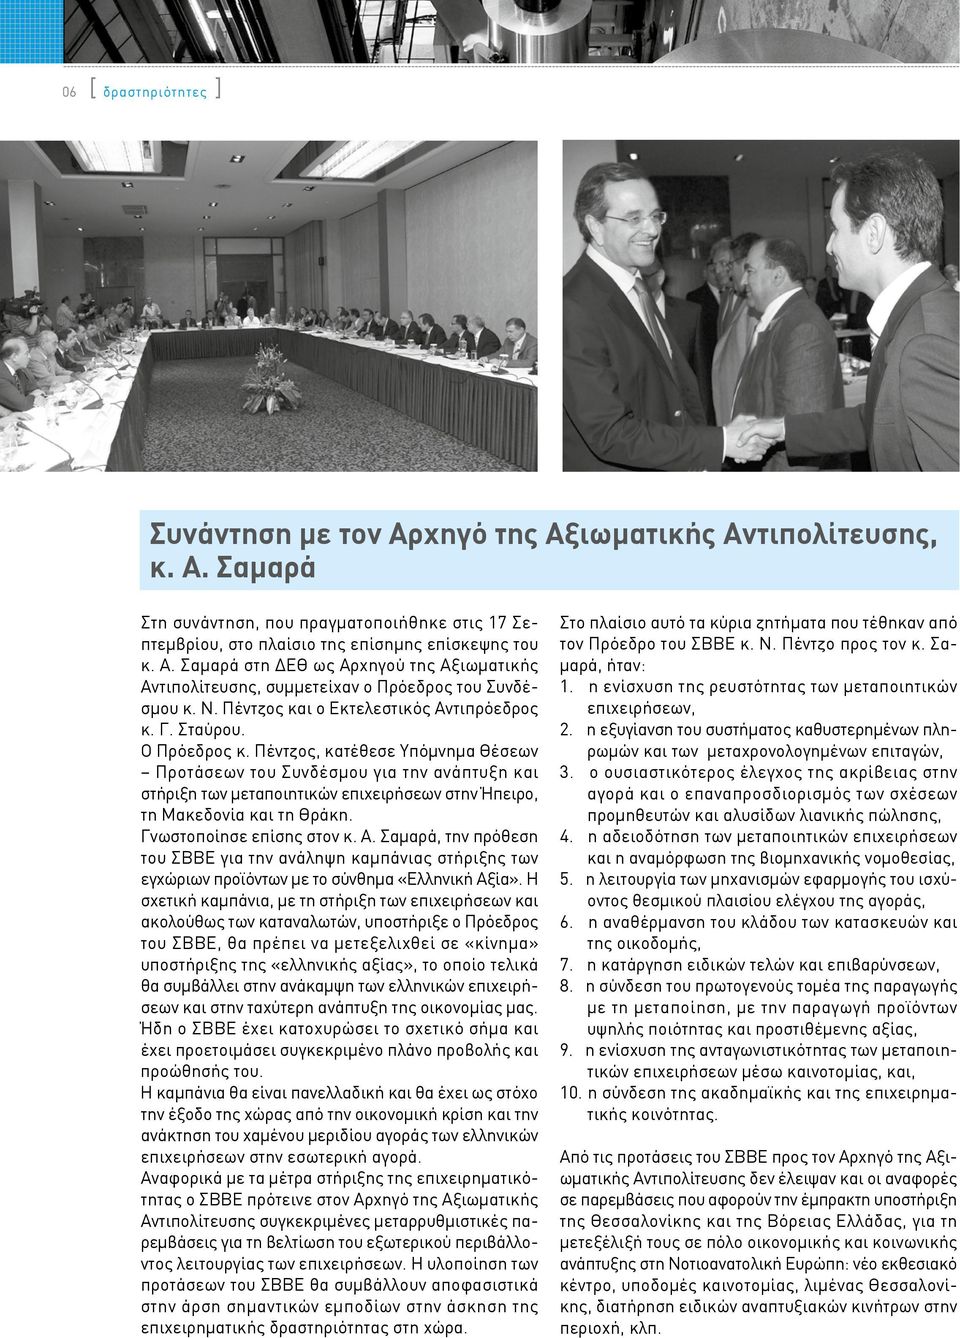 Πέντζος, κατέθεσε Υπόμνημα Θέσεων Προτάσεων του Συνδέσμου για την ανάπτυξη και στήριξη των μεταποιητικών επιχειρήσεων στην Ήπειρο, τη Μακεδονία και τη Θράκη. Γνωστοποίησε επίσης στον κ. Α.